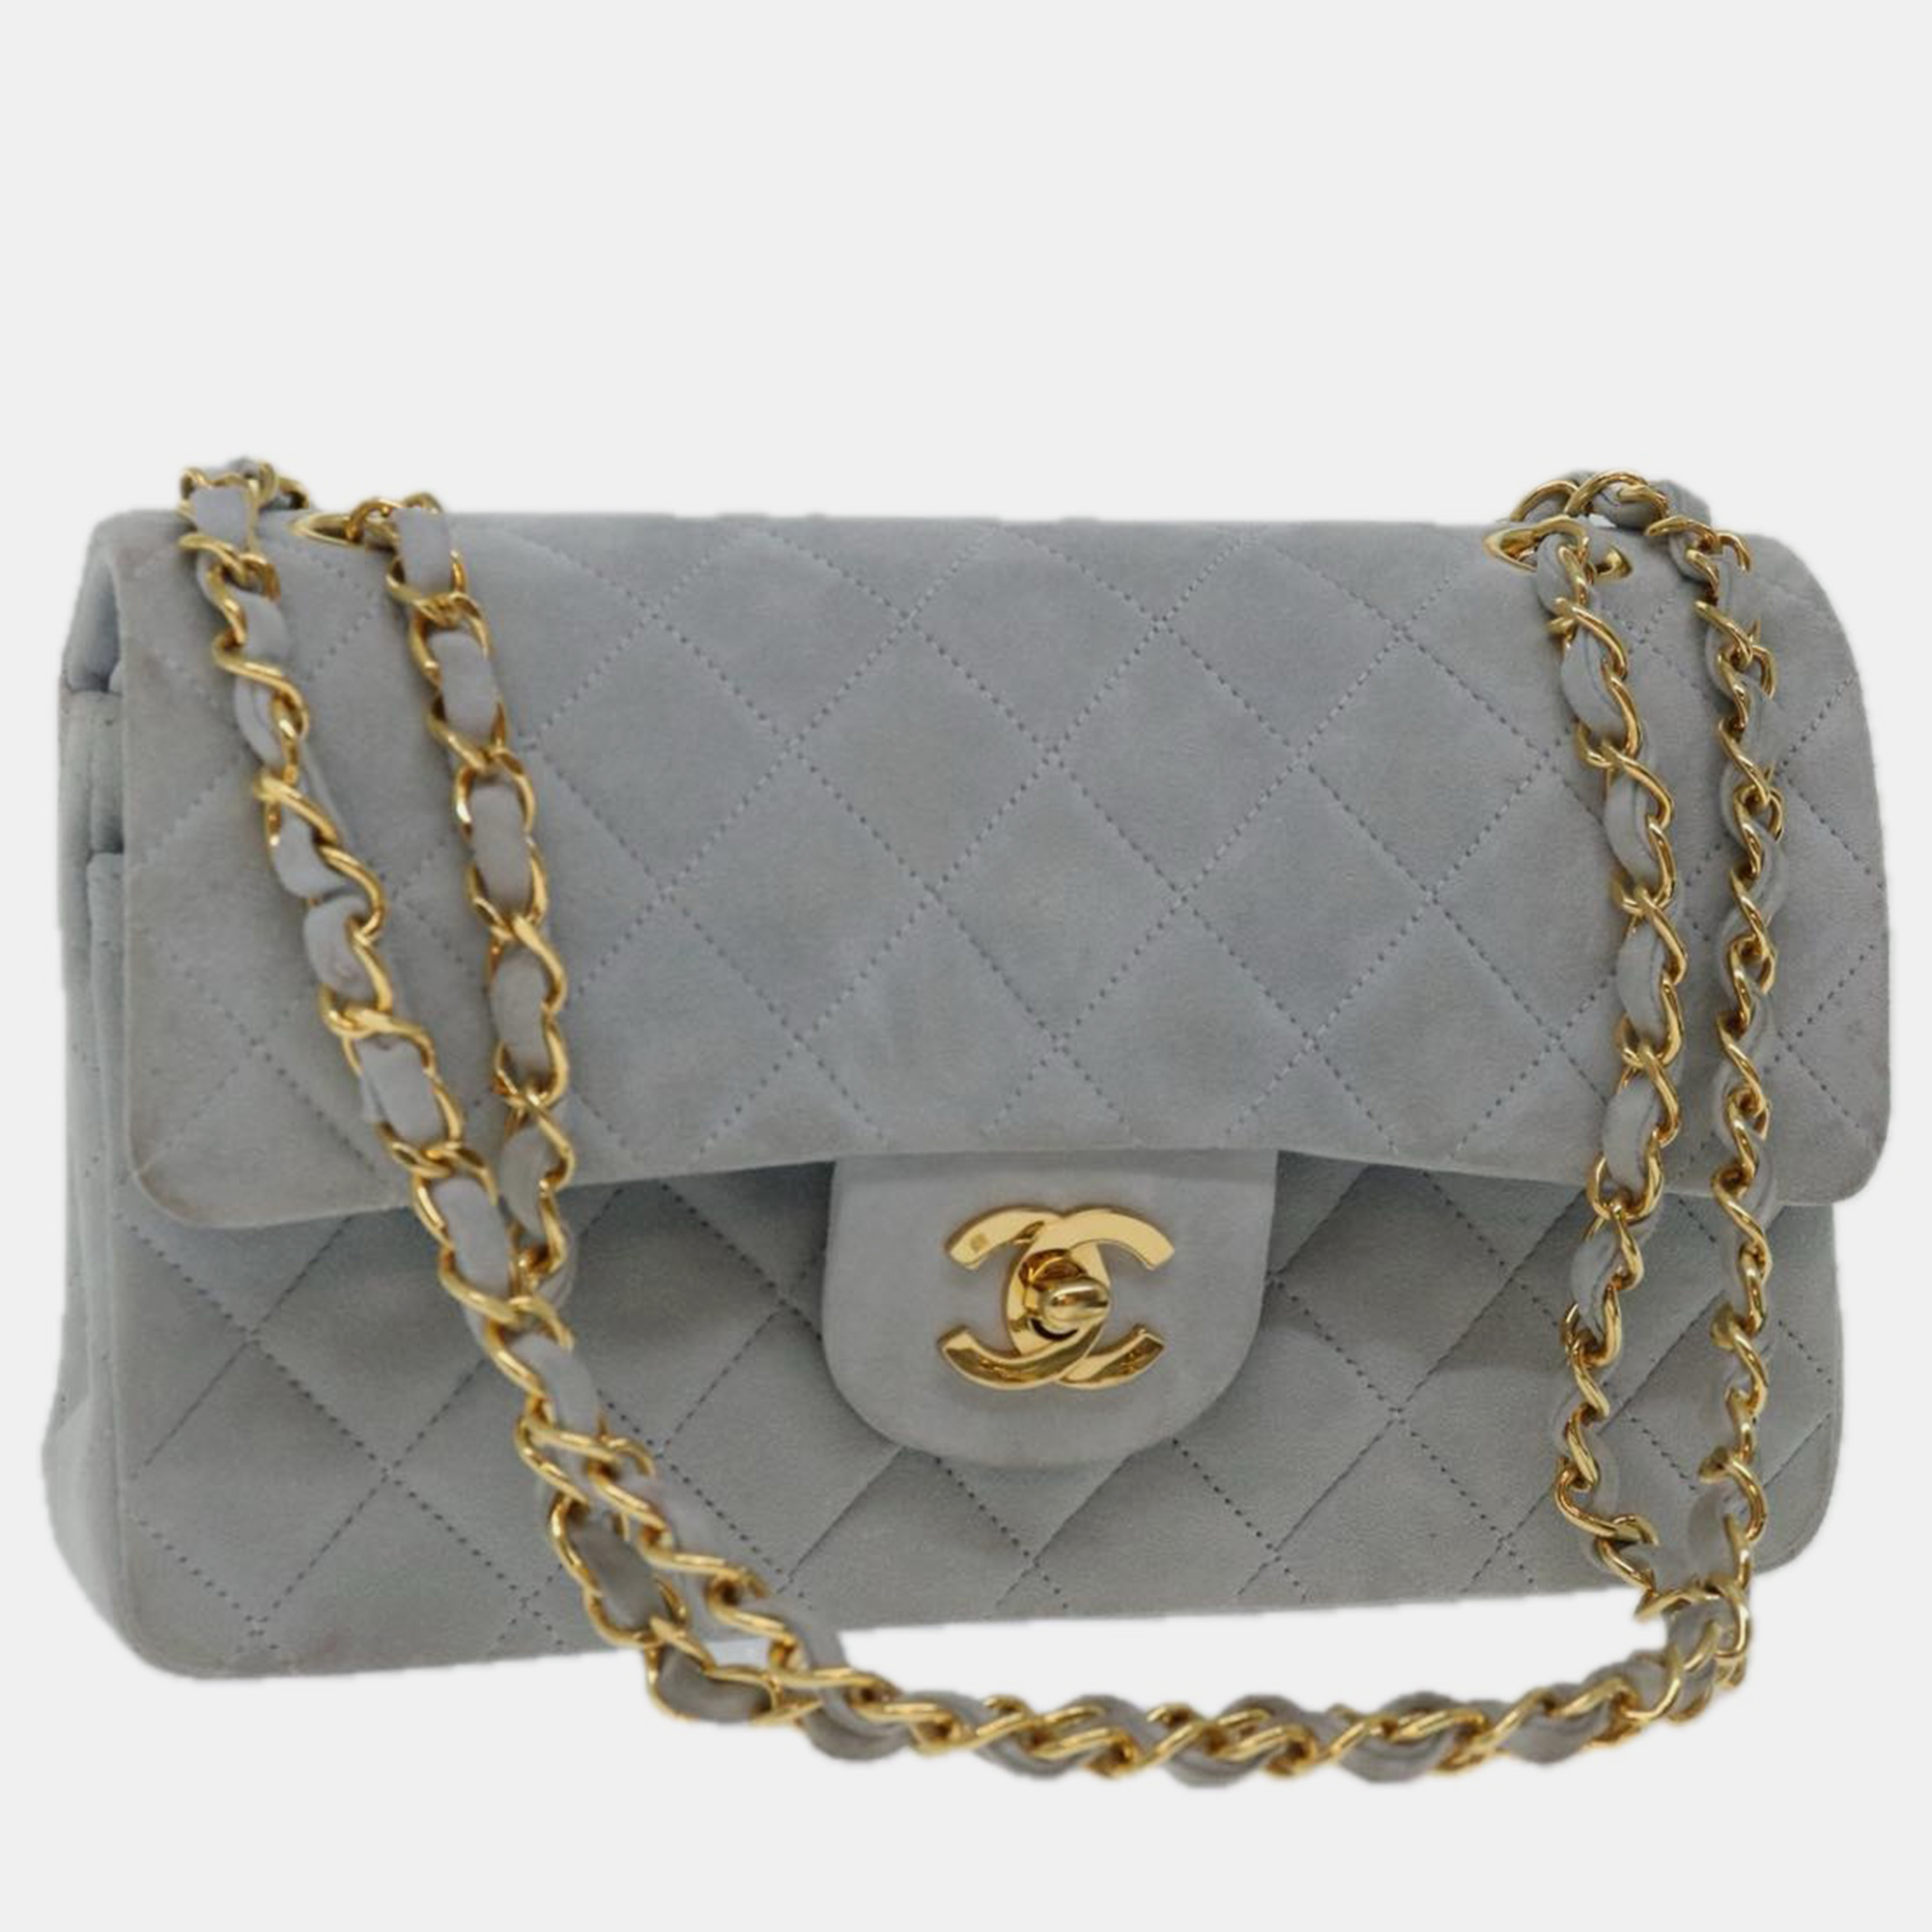 Chanel blue suede timeless shoulder bag